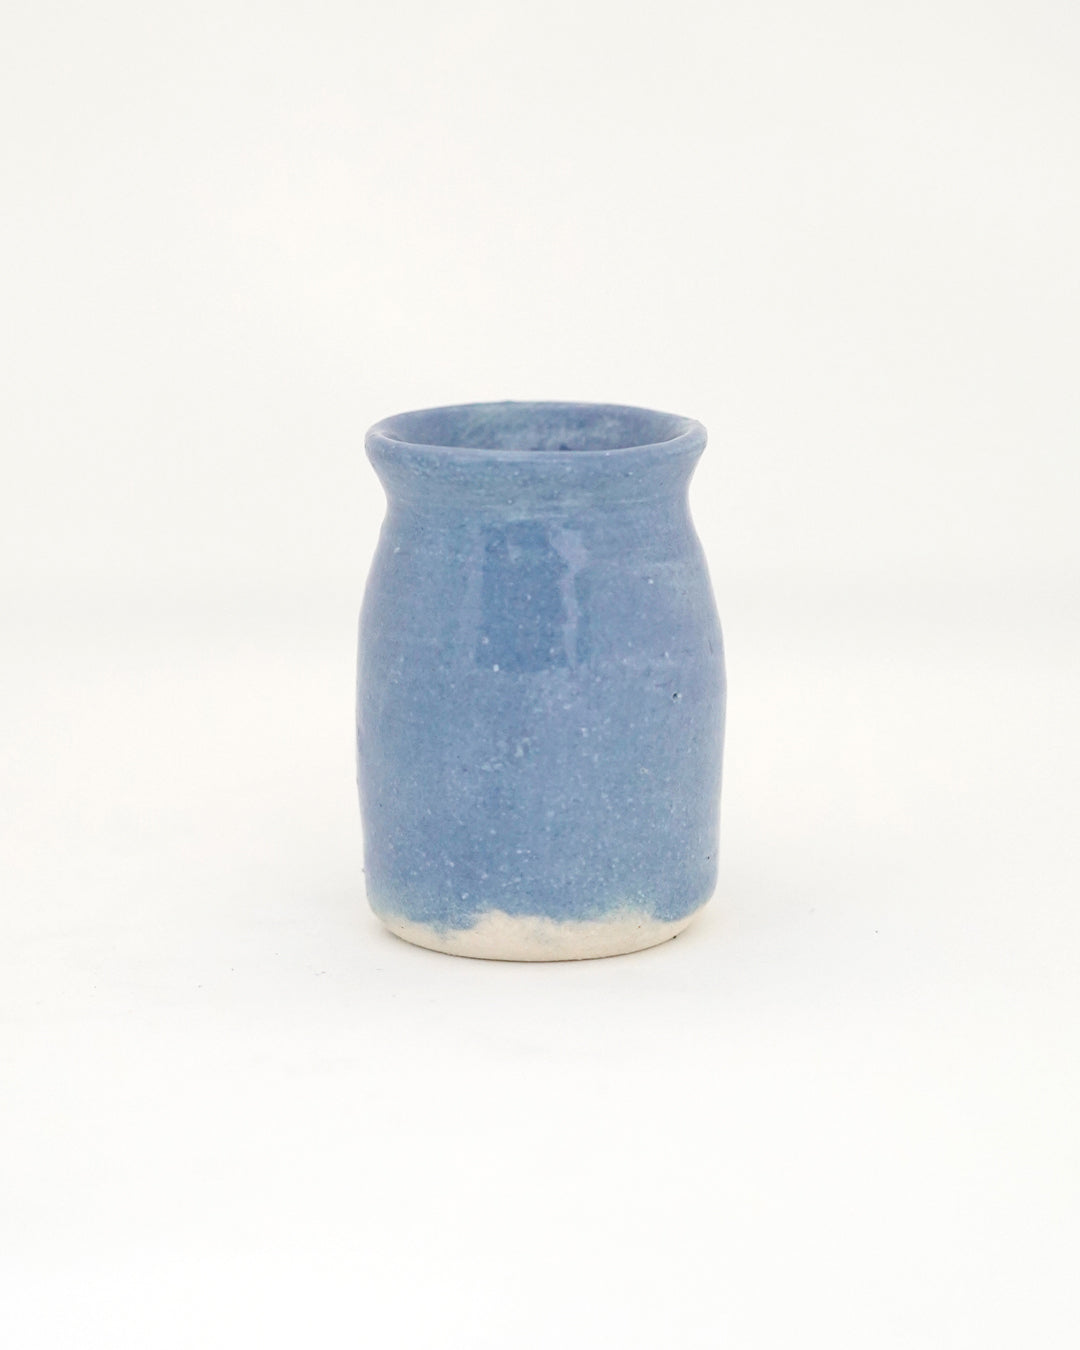 Tiny Vase in Periwinkle